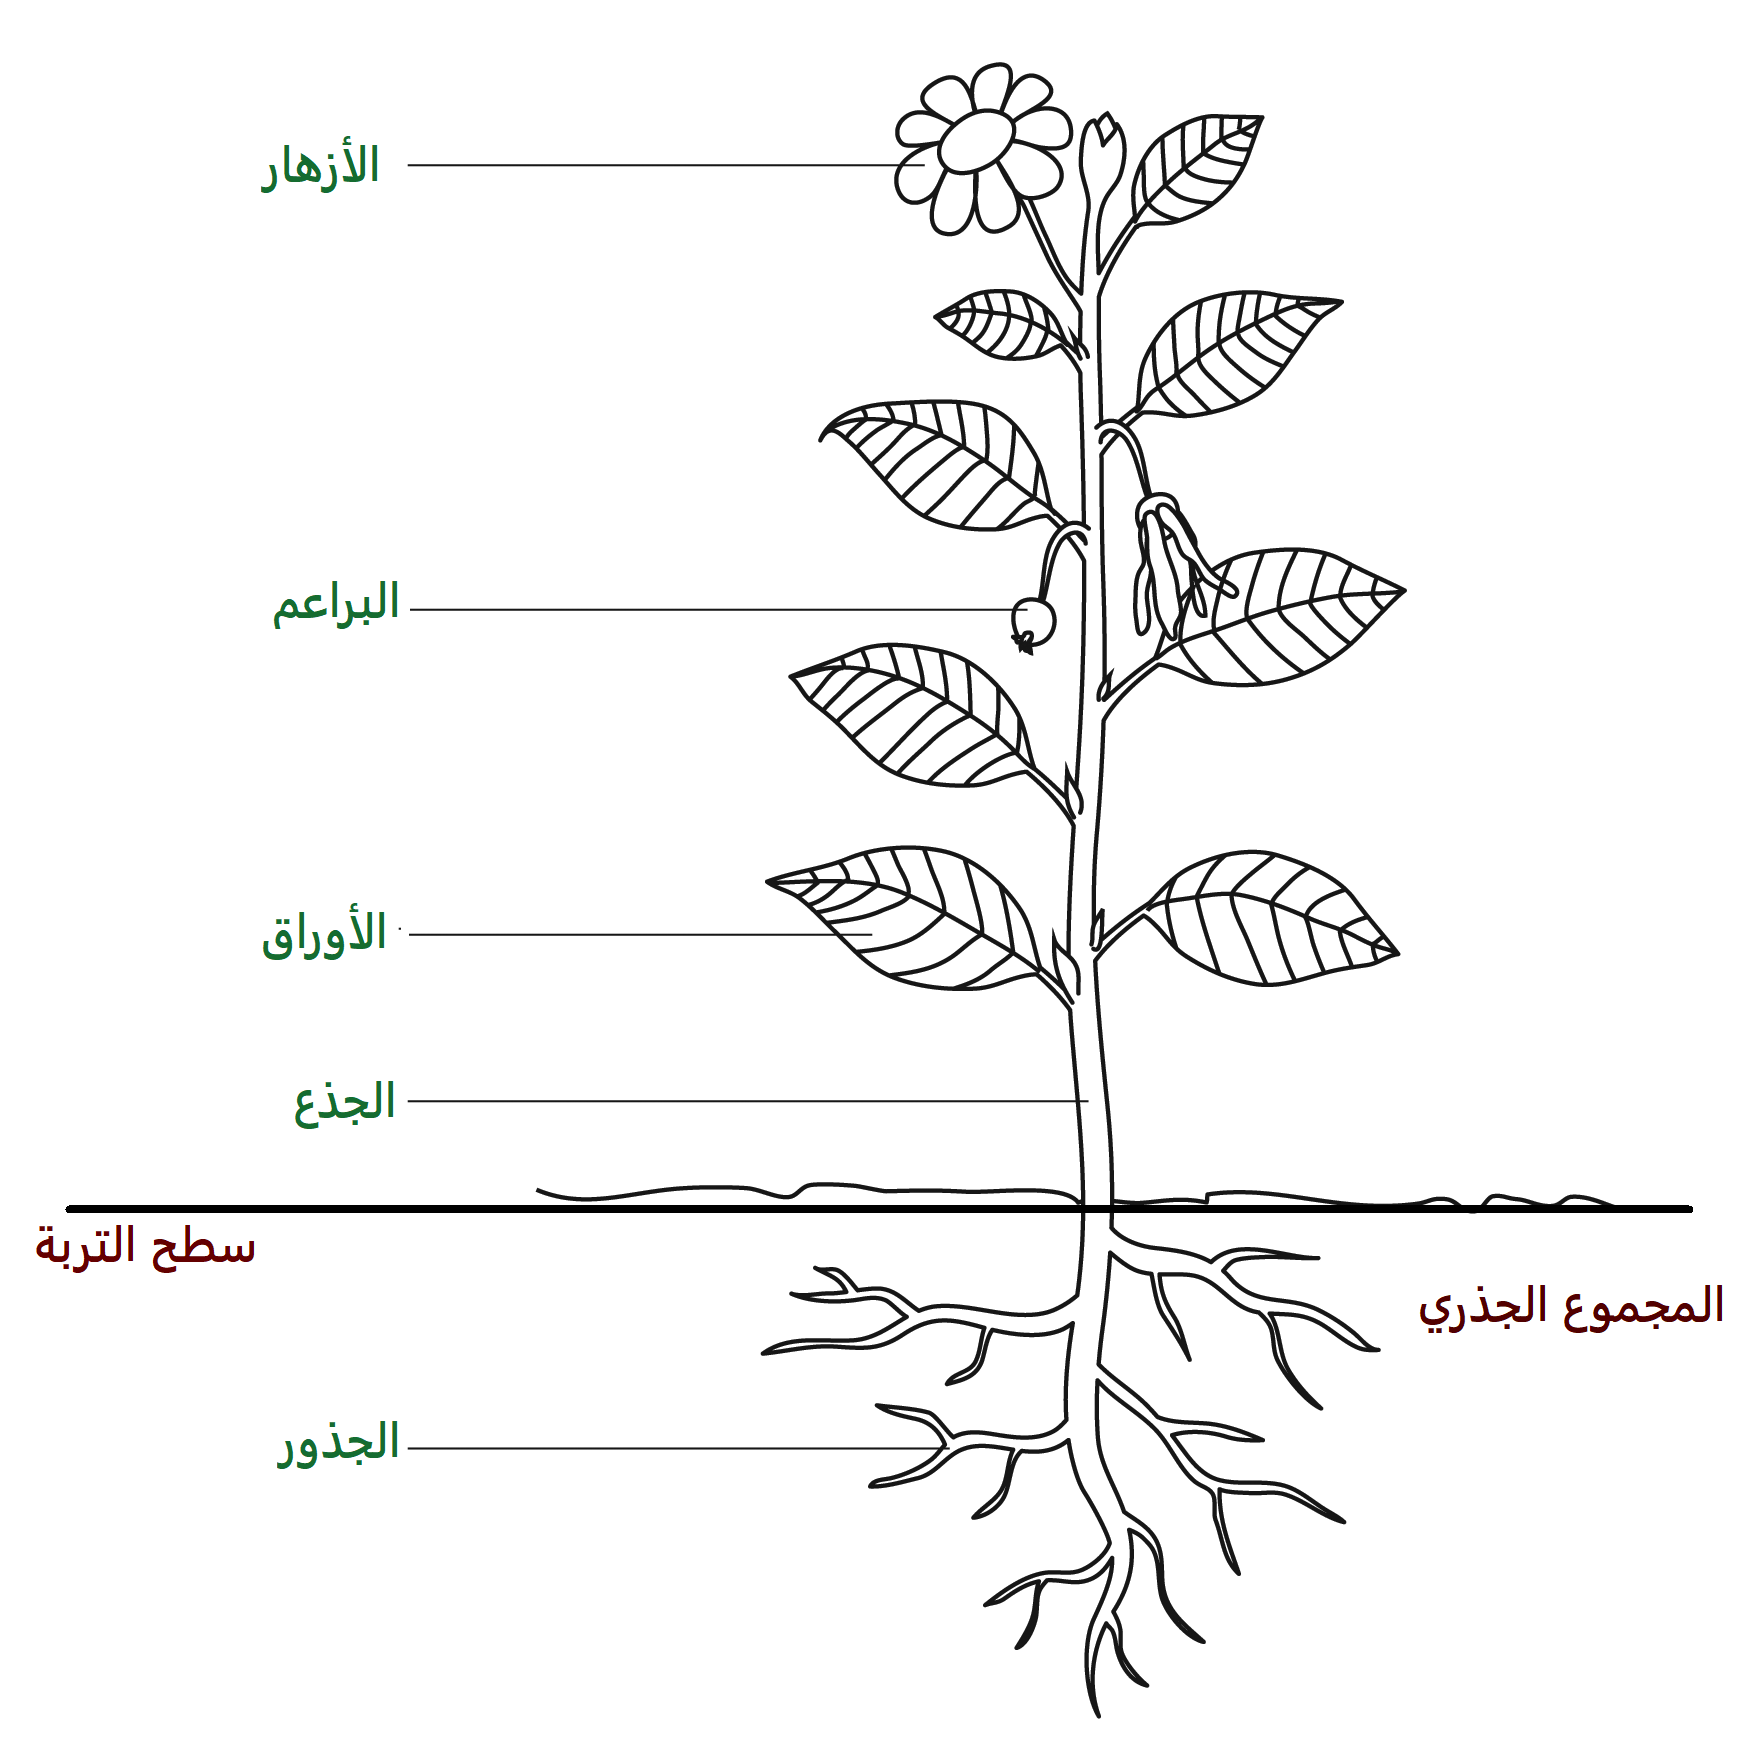 تعريف المجموع الجذري للنبات